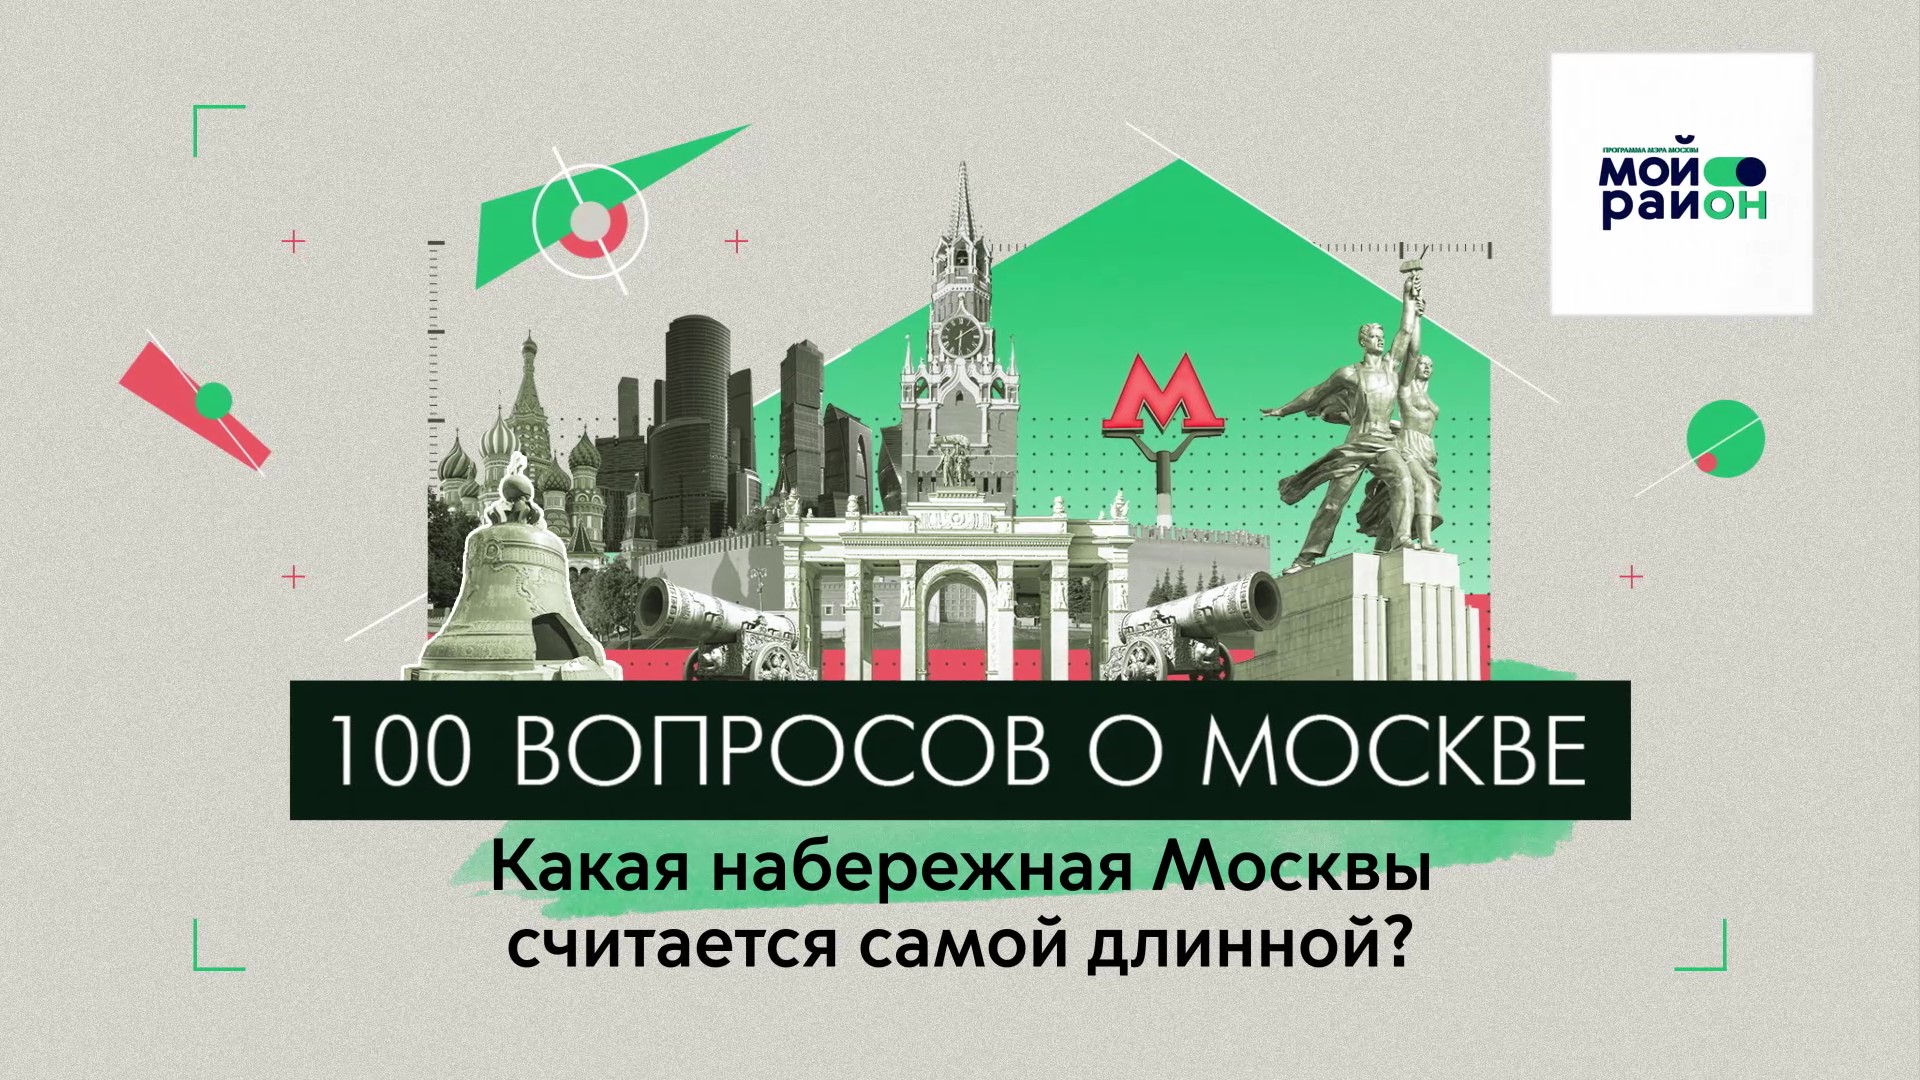 100 вопросов о Москве: Какая набережная столицы – самая длинная?